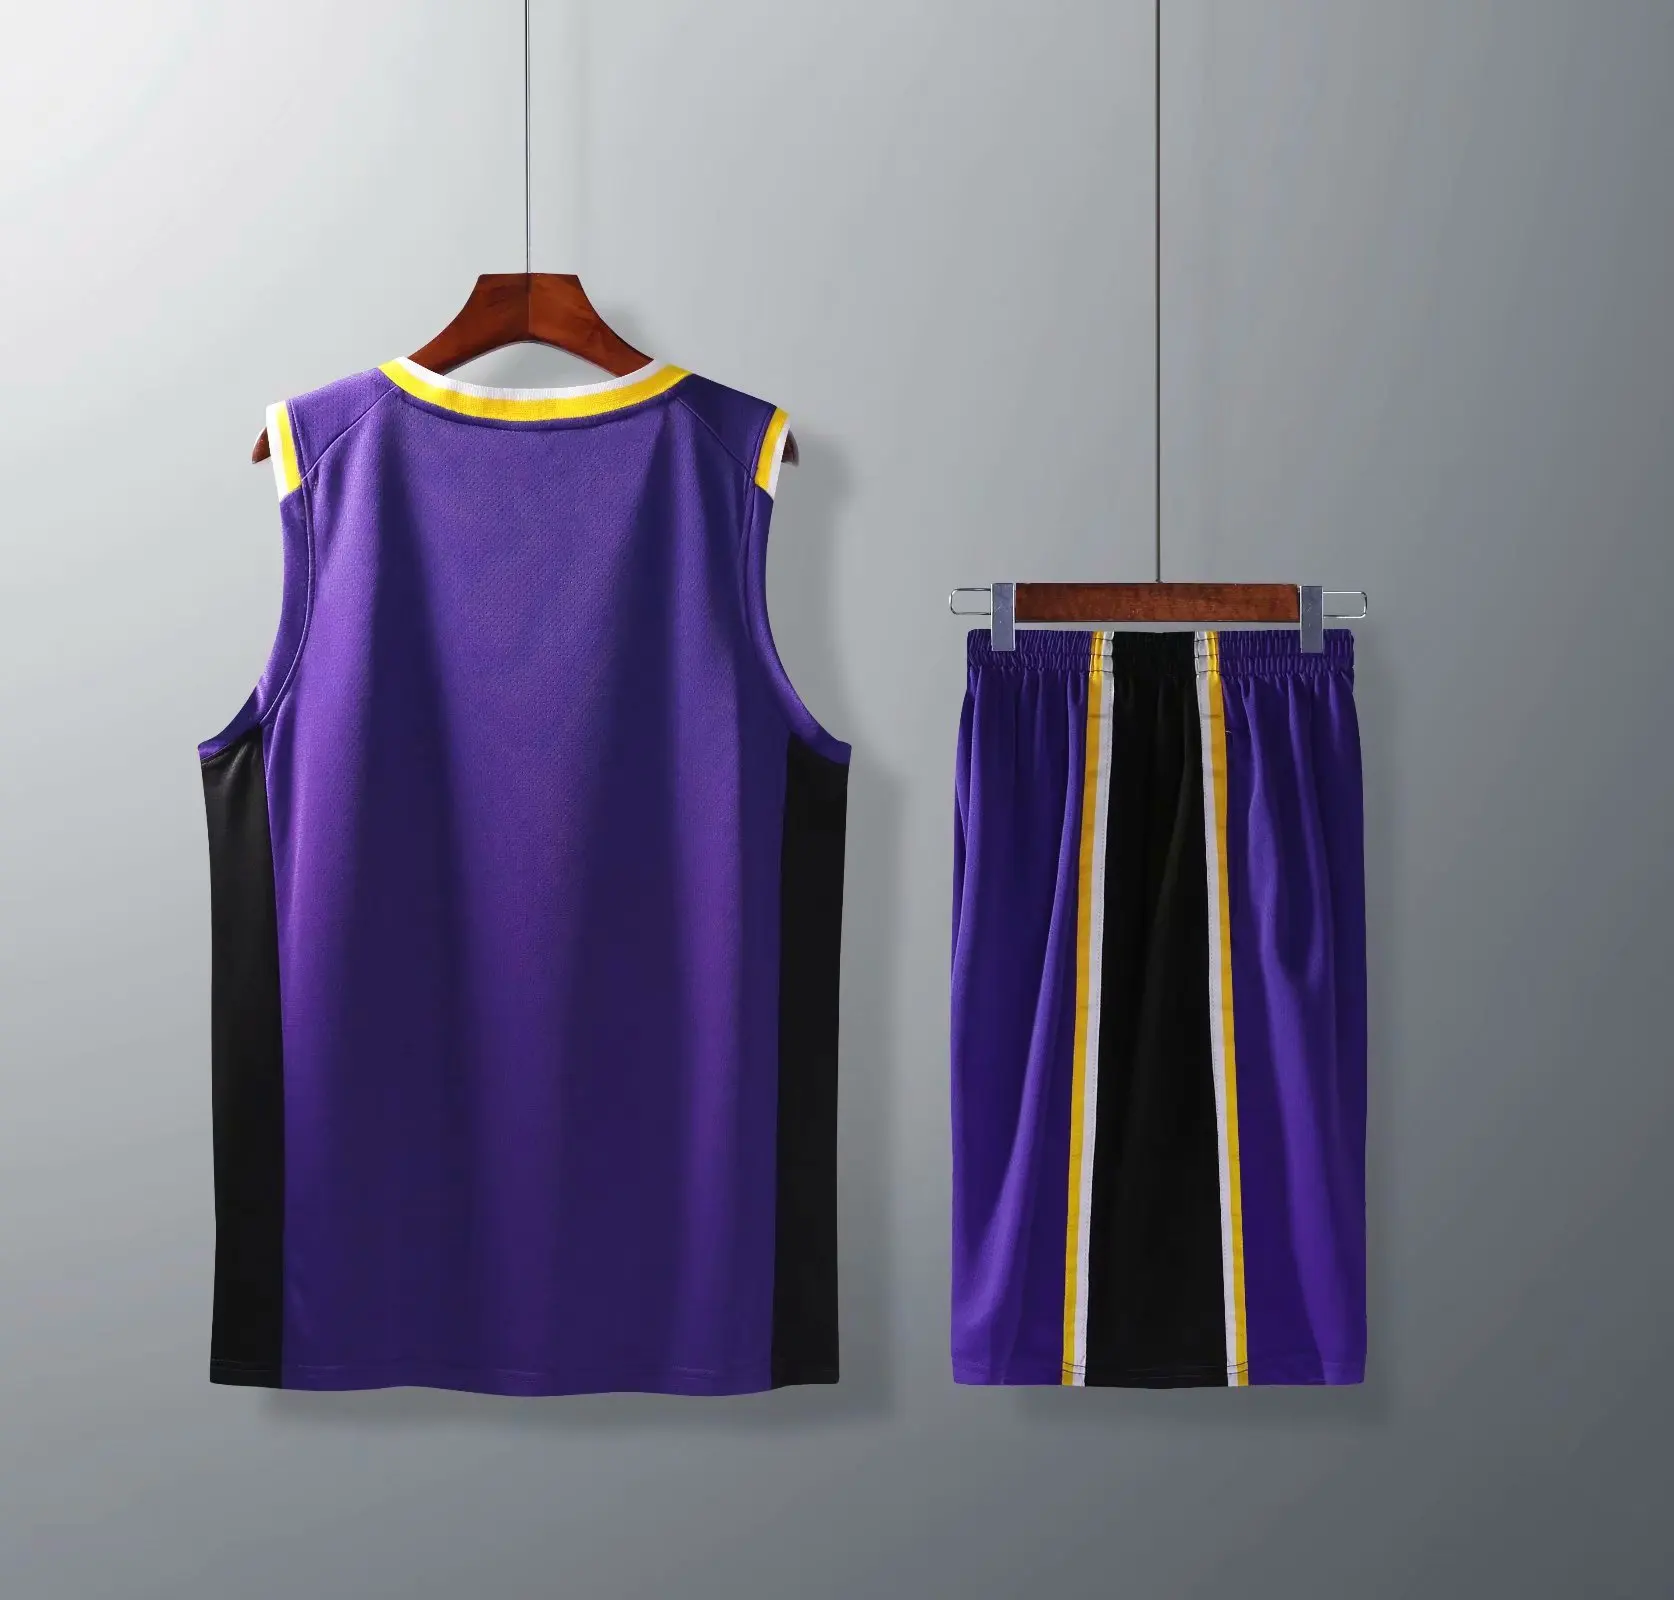 18-19 стиль Lakers NBA костюм для баскетбола спортивная одежда индивидуальные персонажи игры Джерси T